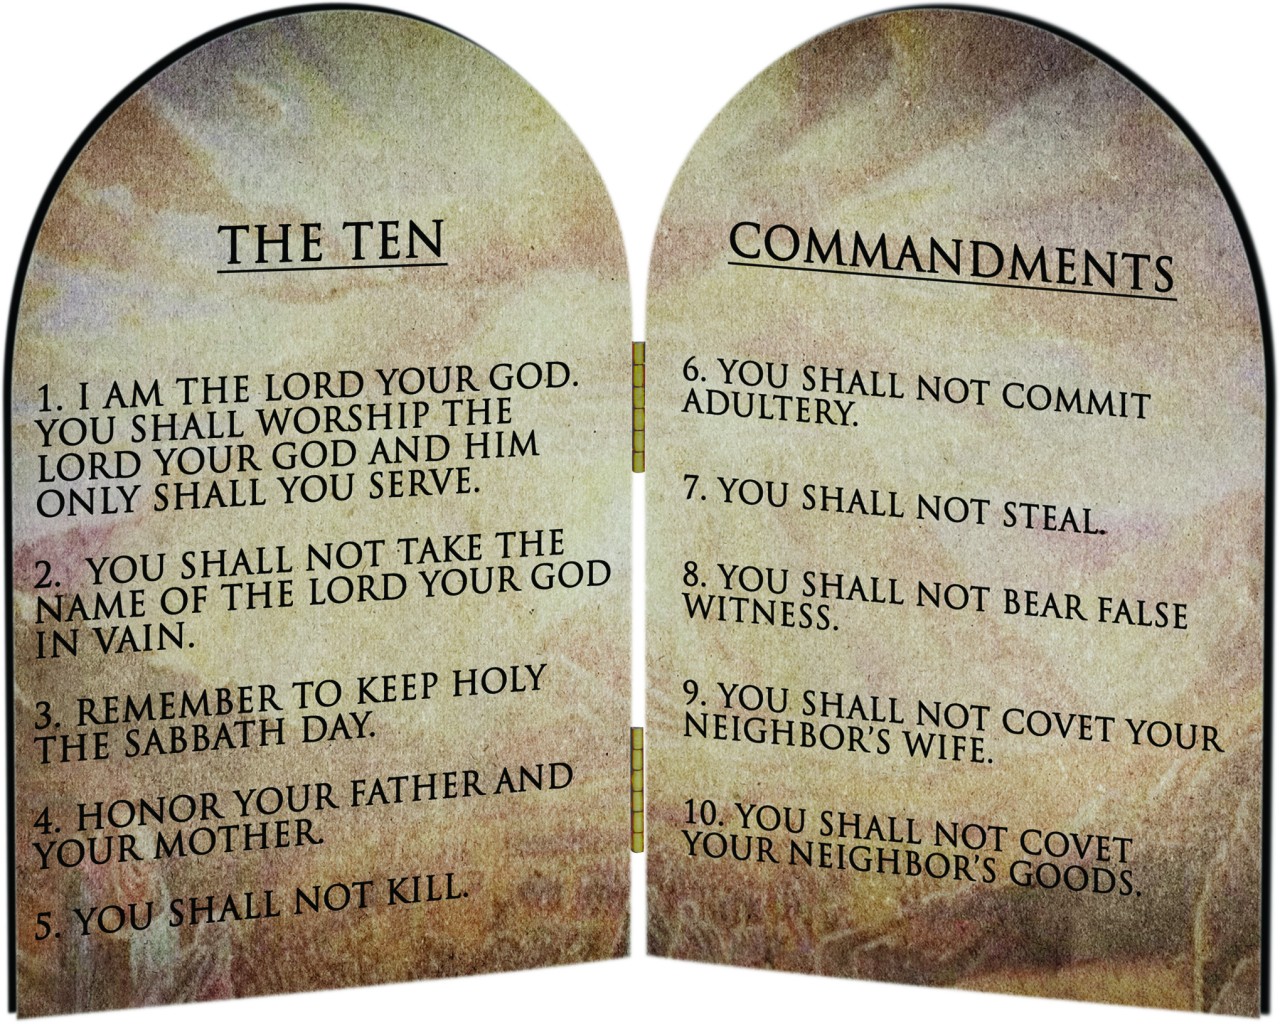 Judaism: The Ten Commandments